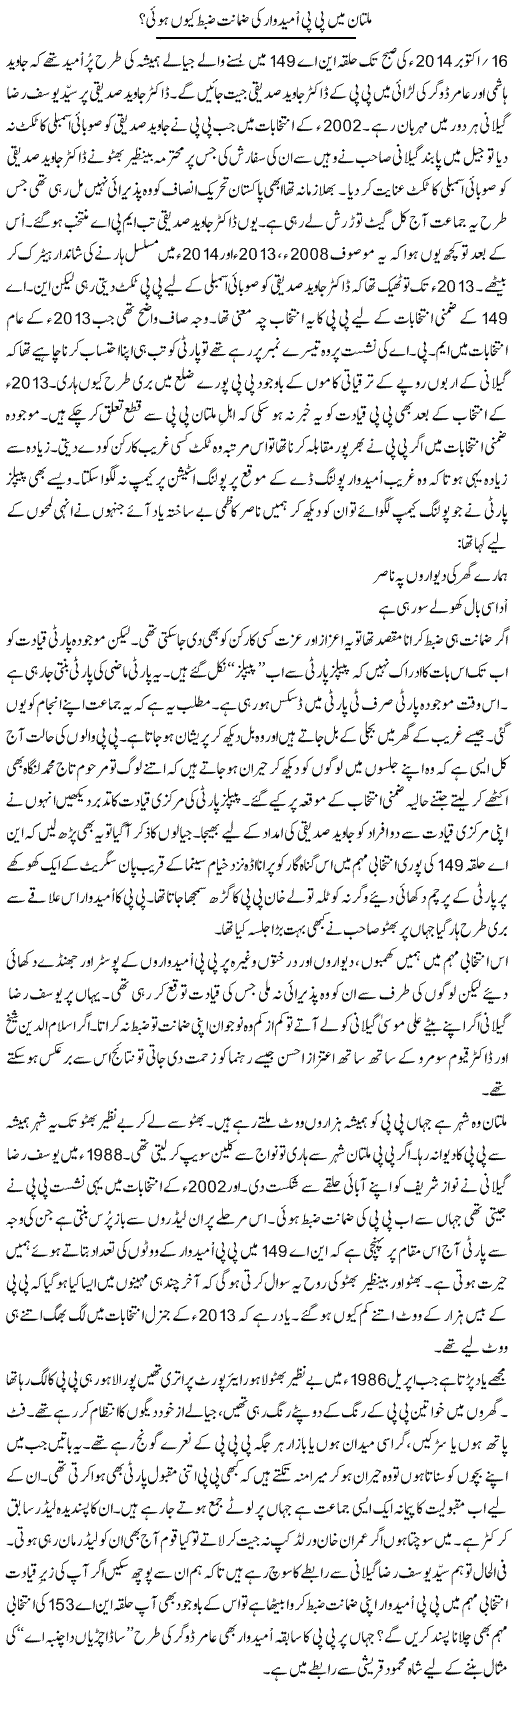 Multan Main Pp Umeedwar Ki Zamanat Zabt Kion Hui? | Shakir Hussain Shakir | Daily Urdu Columns